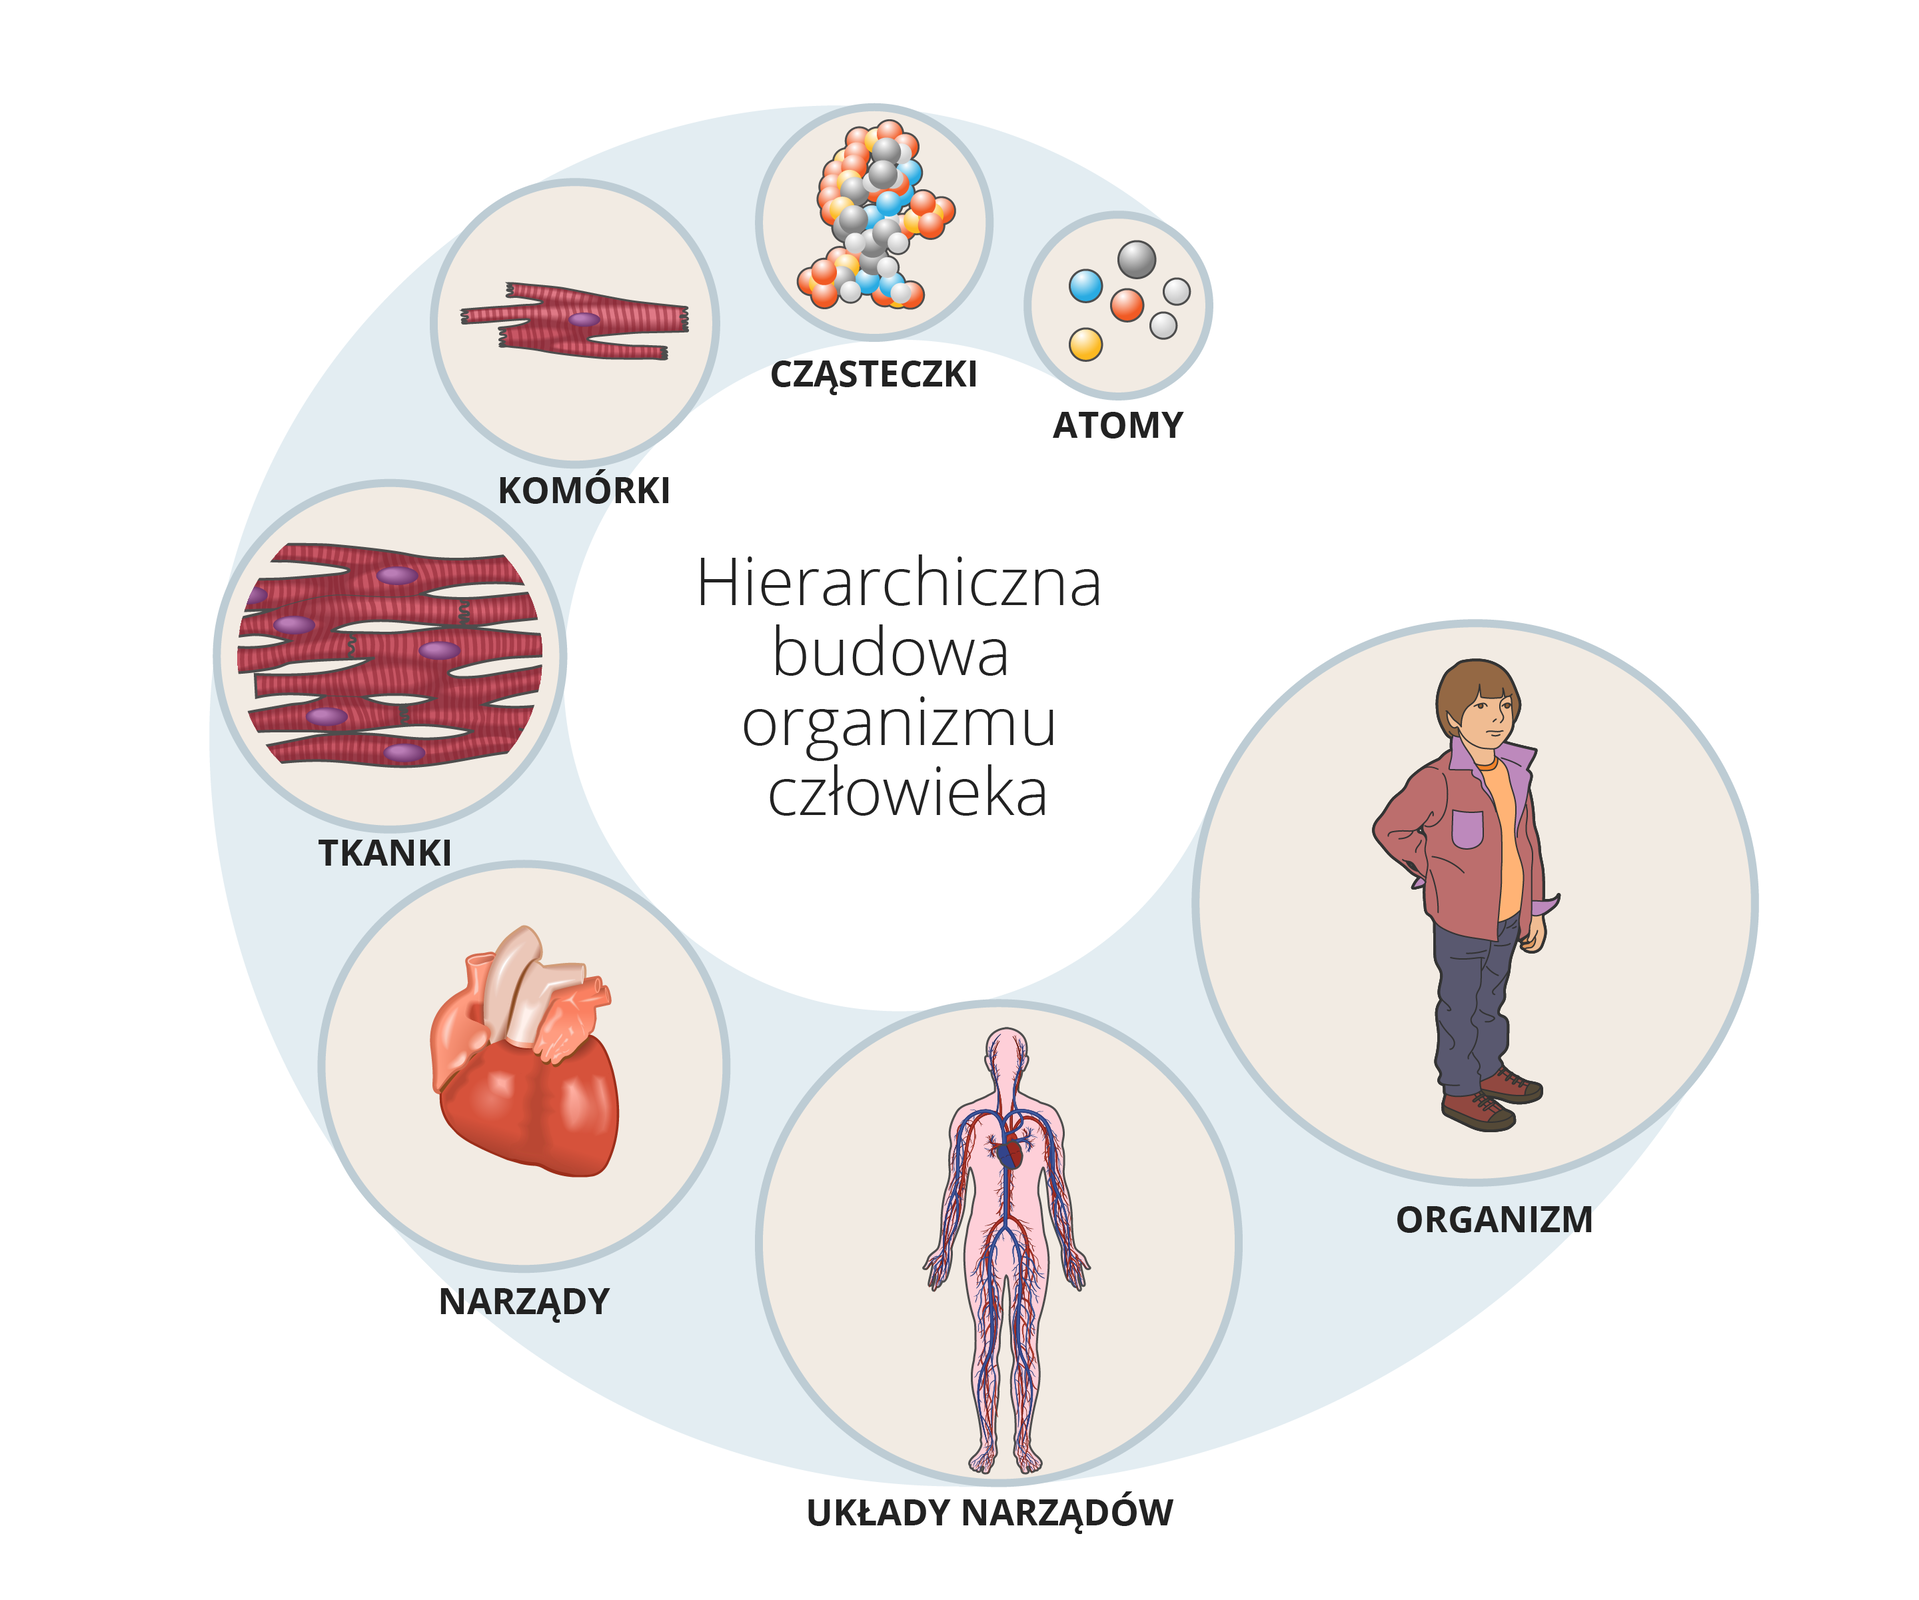 Schemat ilustruje hierarchię w budowie organizmu człowieka, na którą składają się kolejno: atomy, cząsteczki, komórki, tkanki, narządy, układy narządów, organizm człowieka.